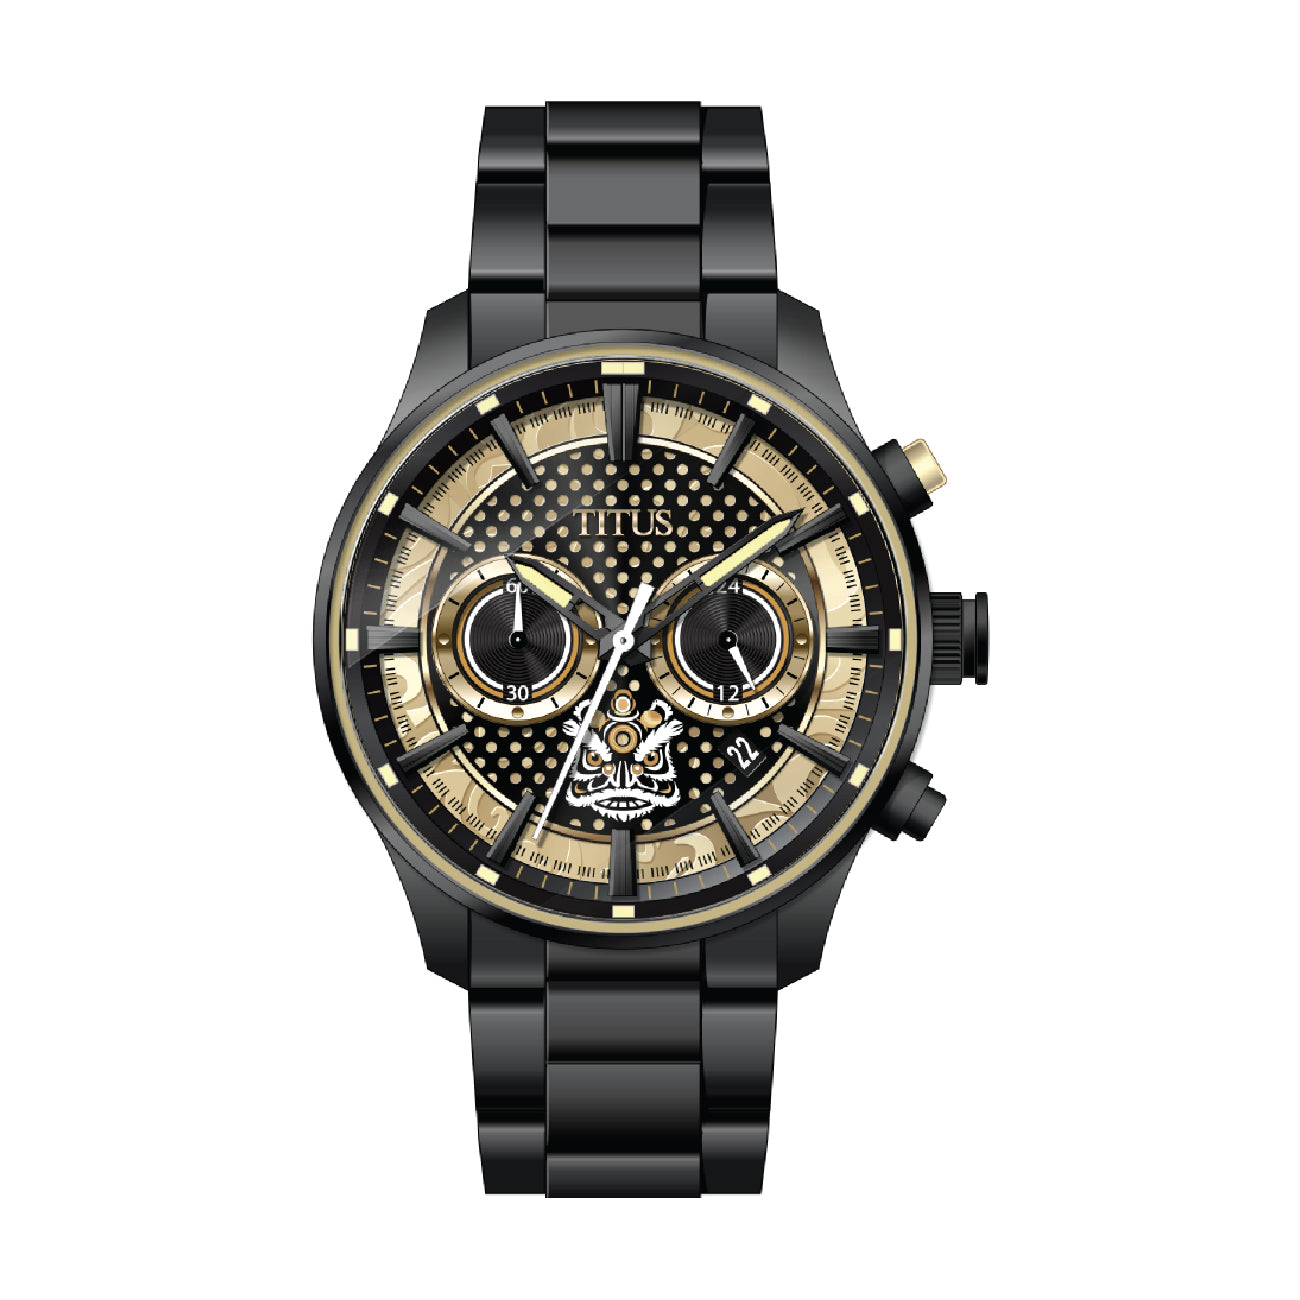 Solvil et Titus Limited Edition Lion Dance Saber Chronograph Quartz Watch W06-03318-002